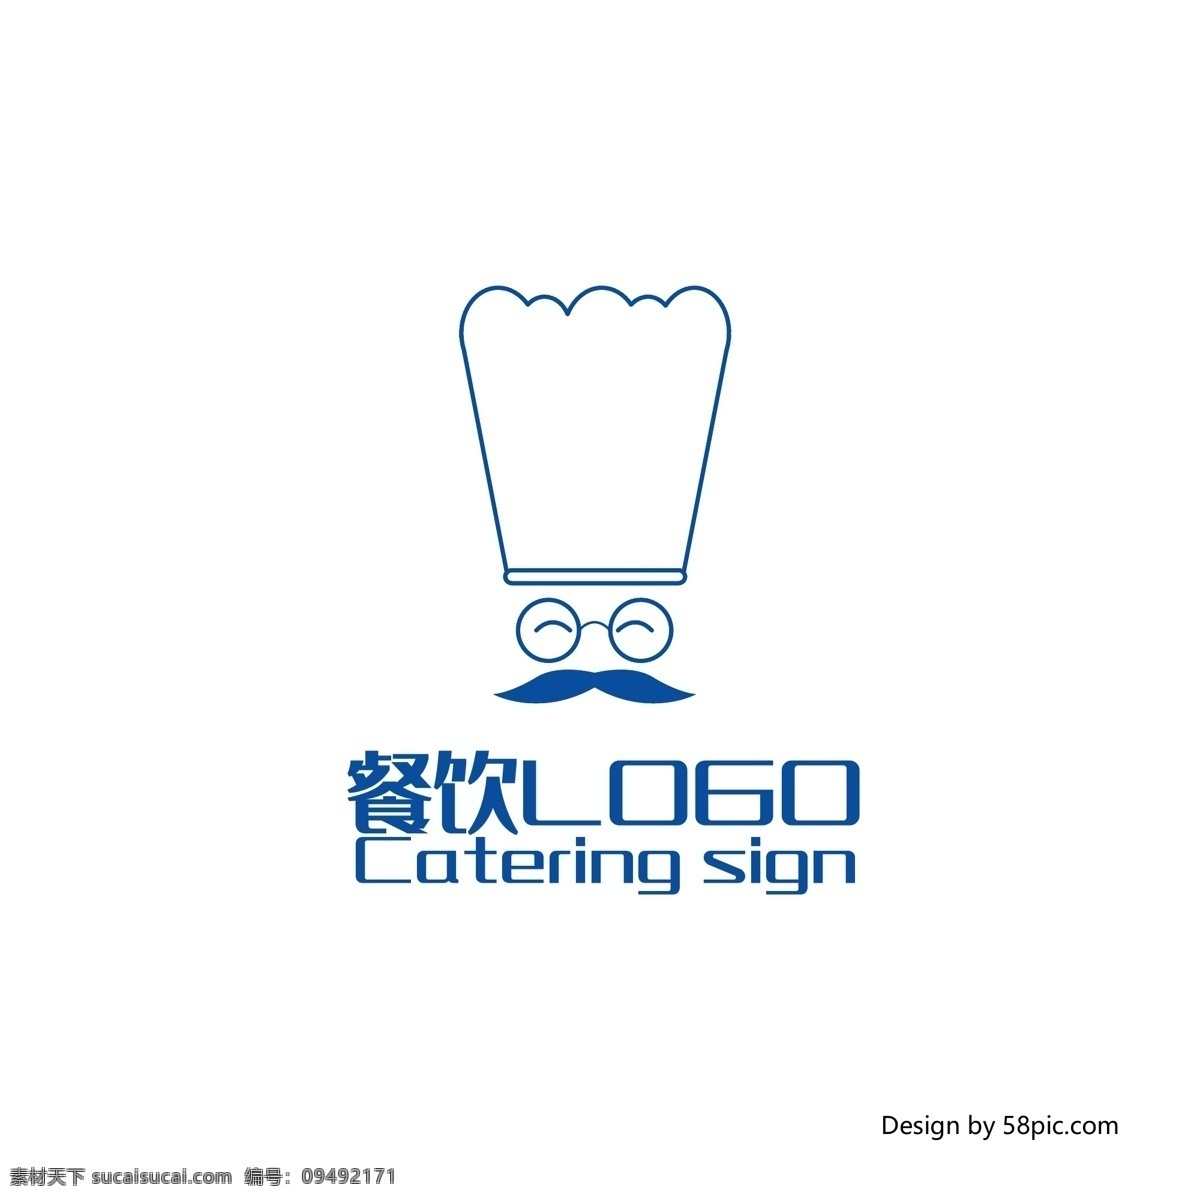 原创 创意 手绘 厨师 帽 餐饮 logo 标志 厨师帽 餐厅 可商用 简约